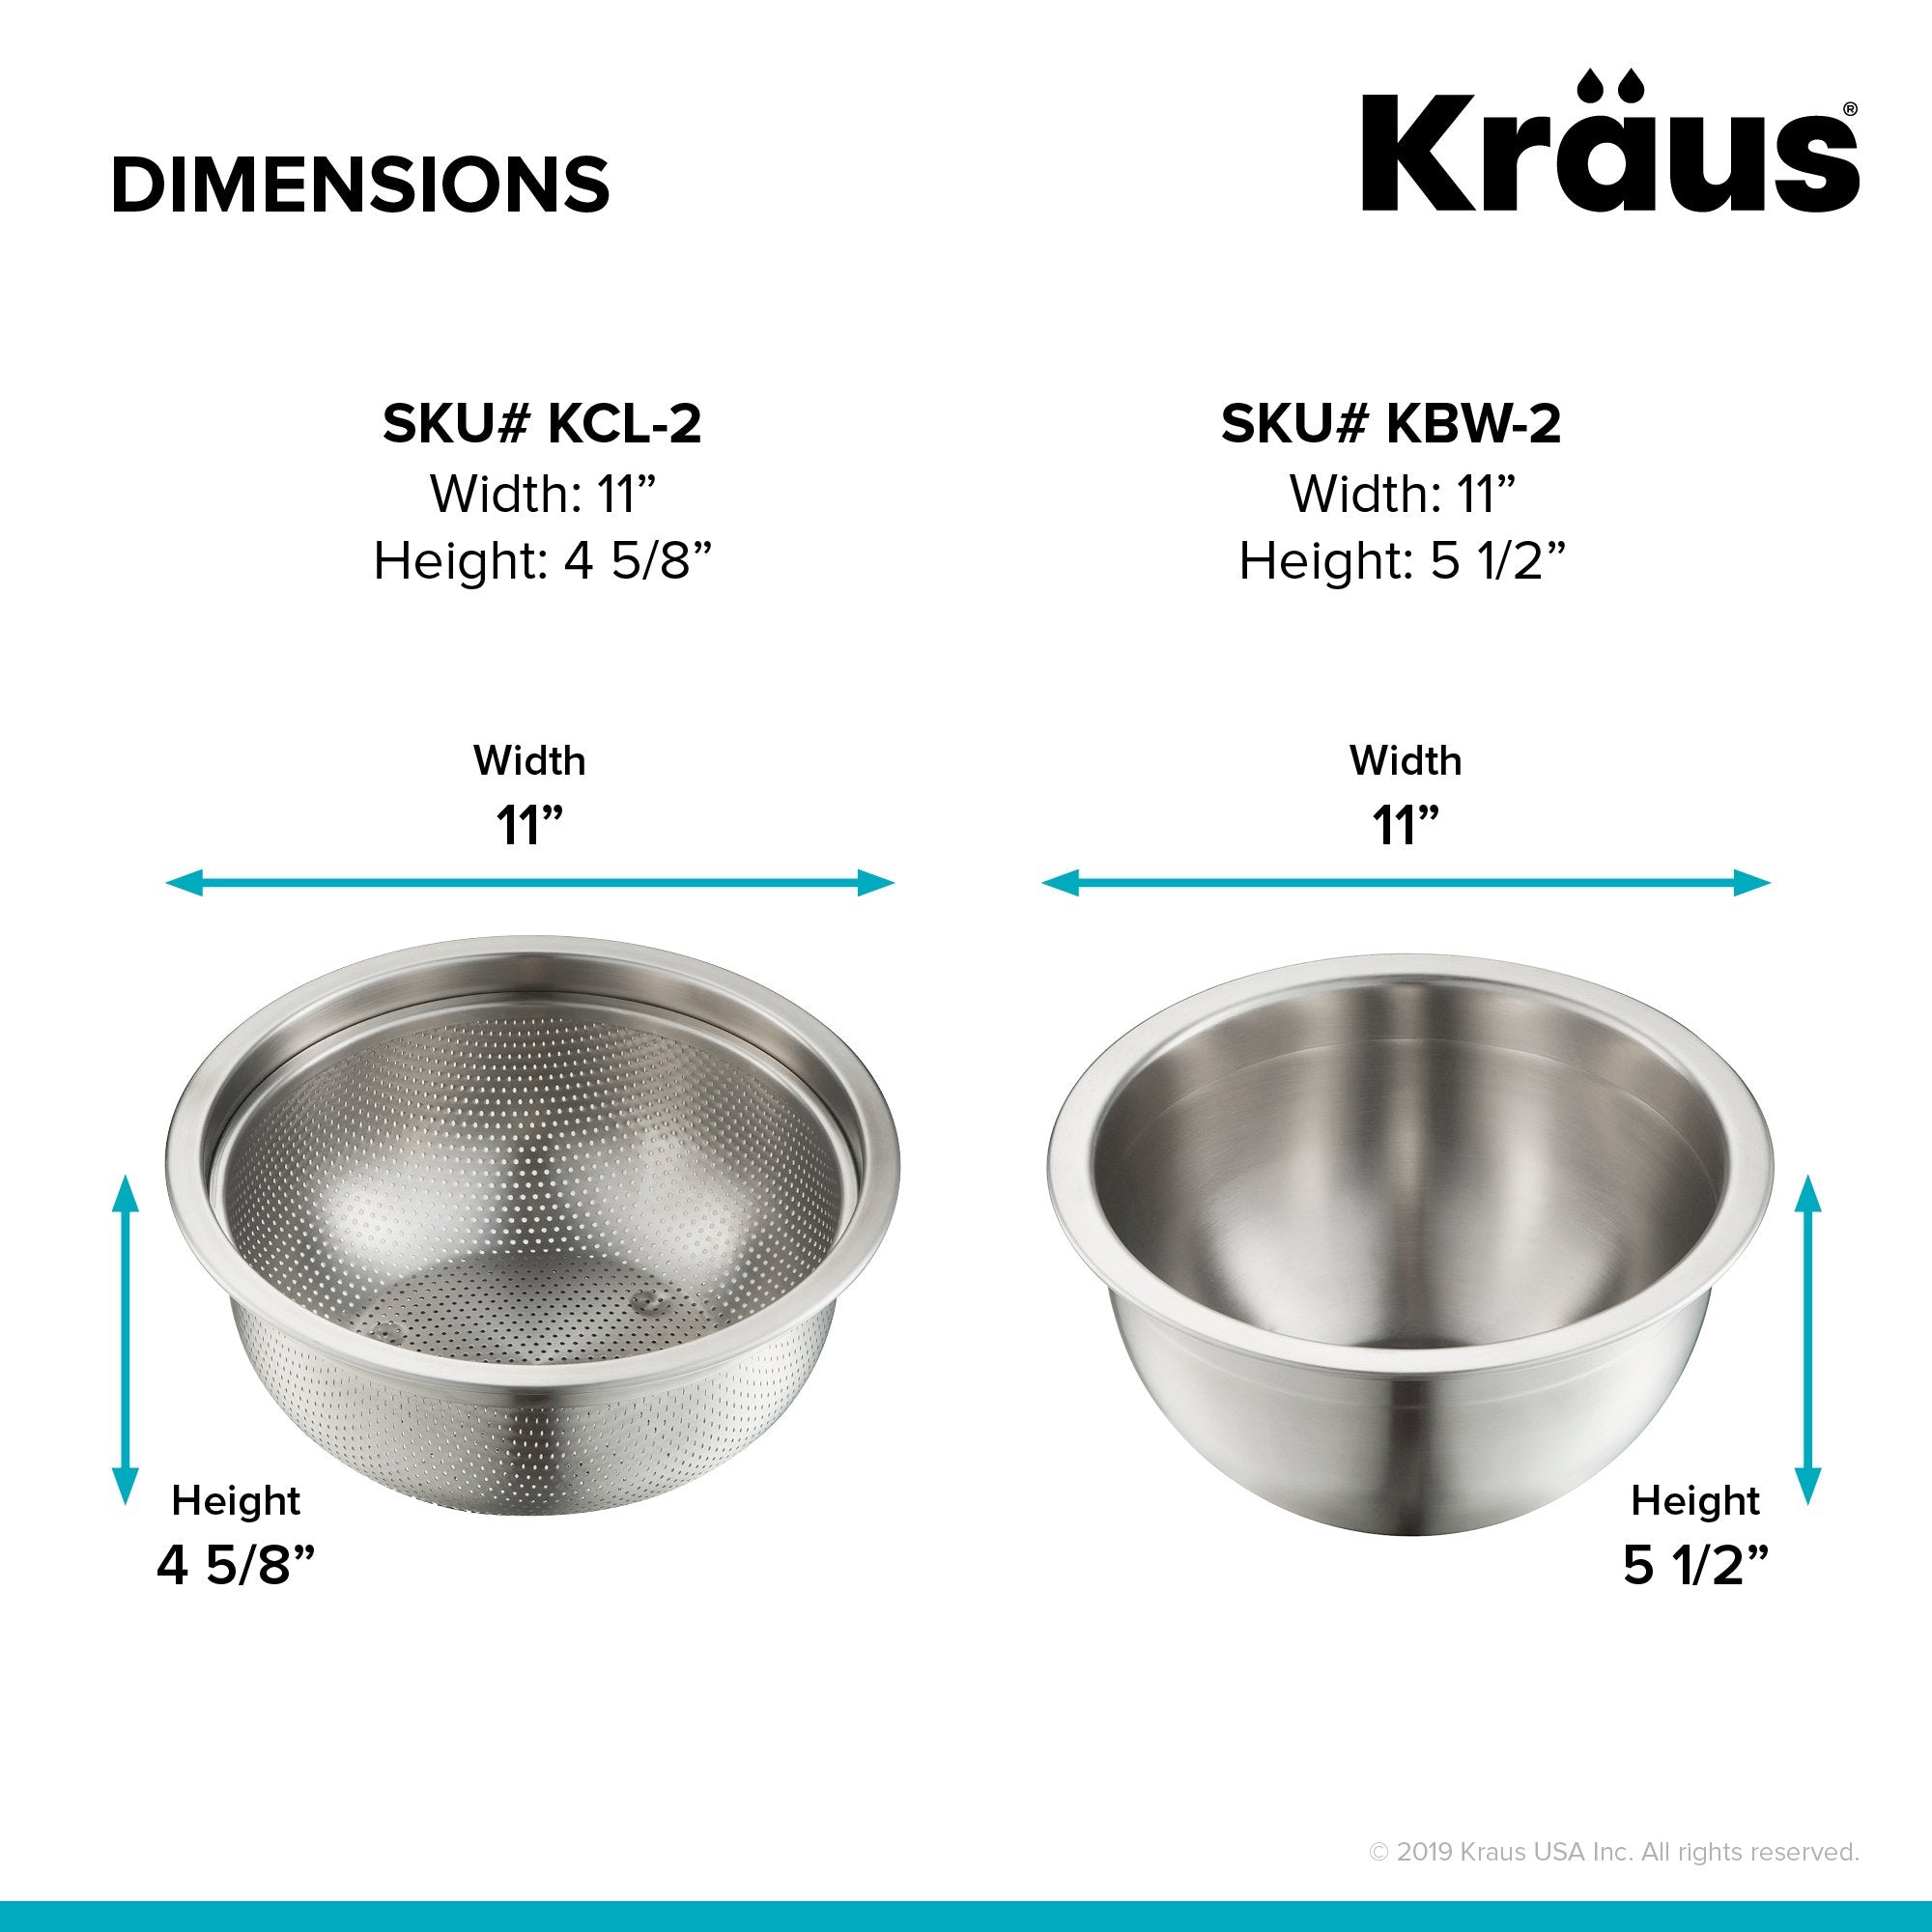 KRAUS Workstation Kitchen Sink Mixing Bowl and Colander-Kitchen Accessories-KRAUS